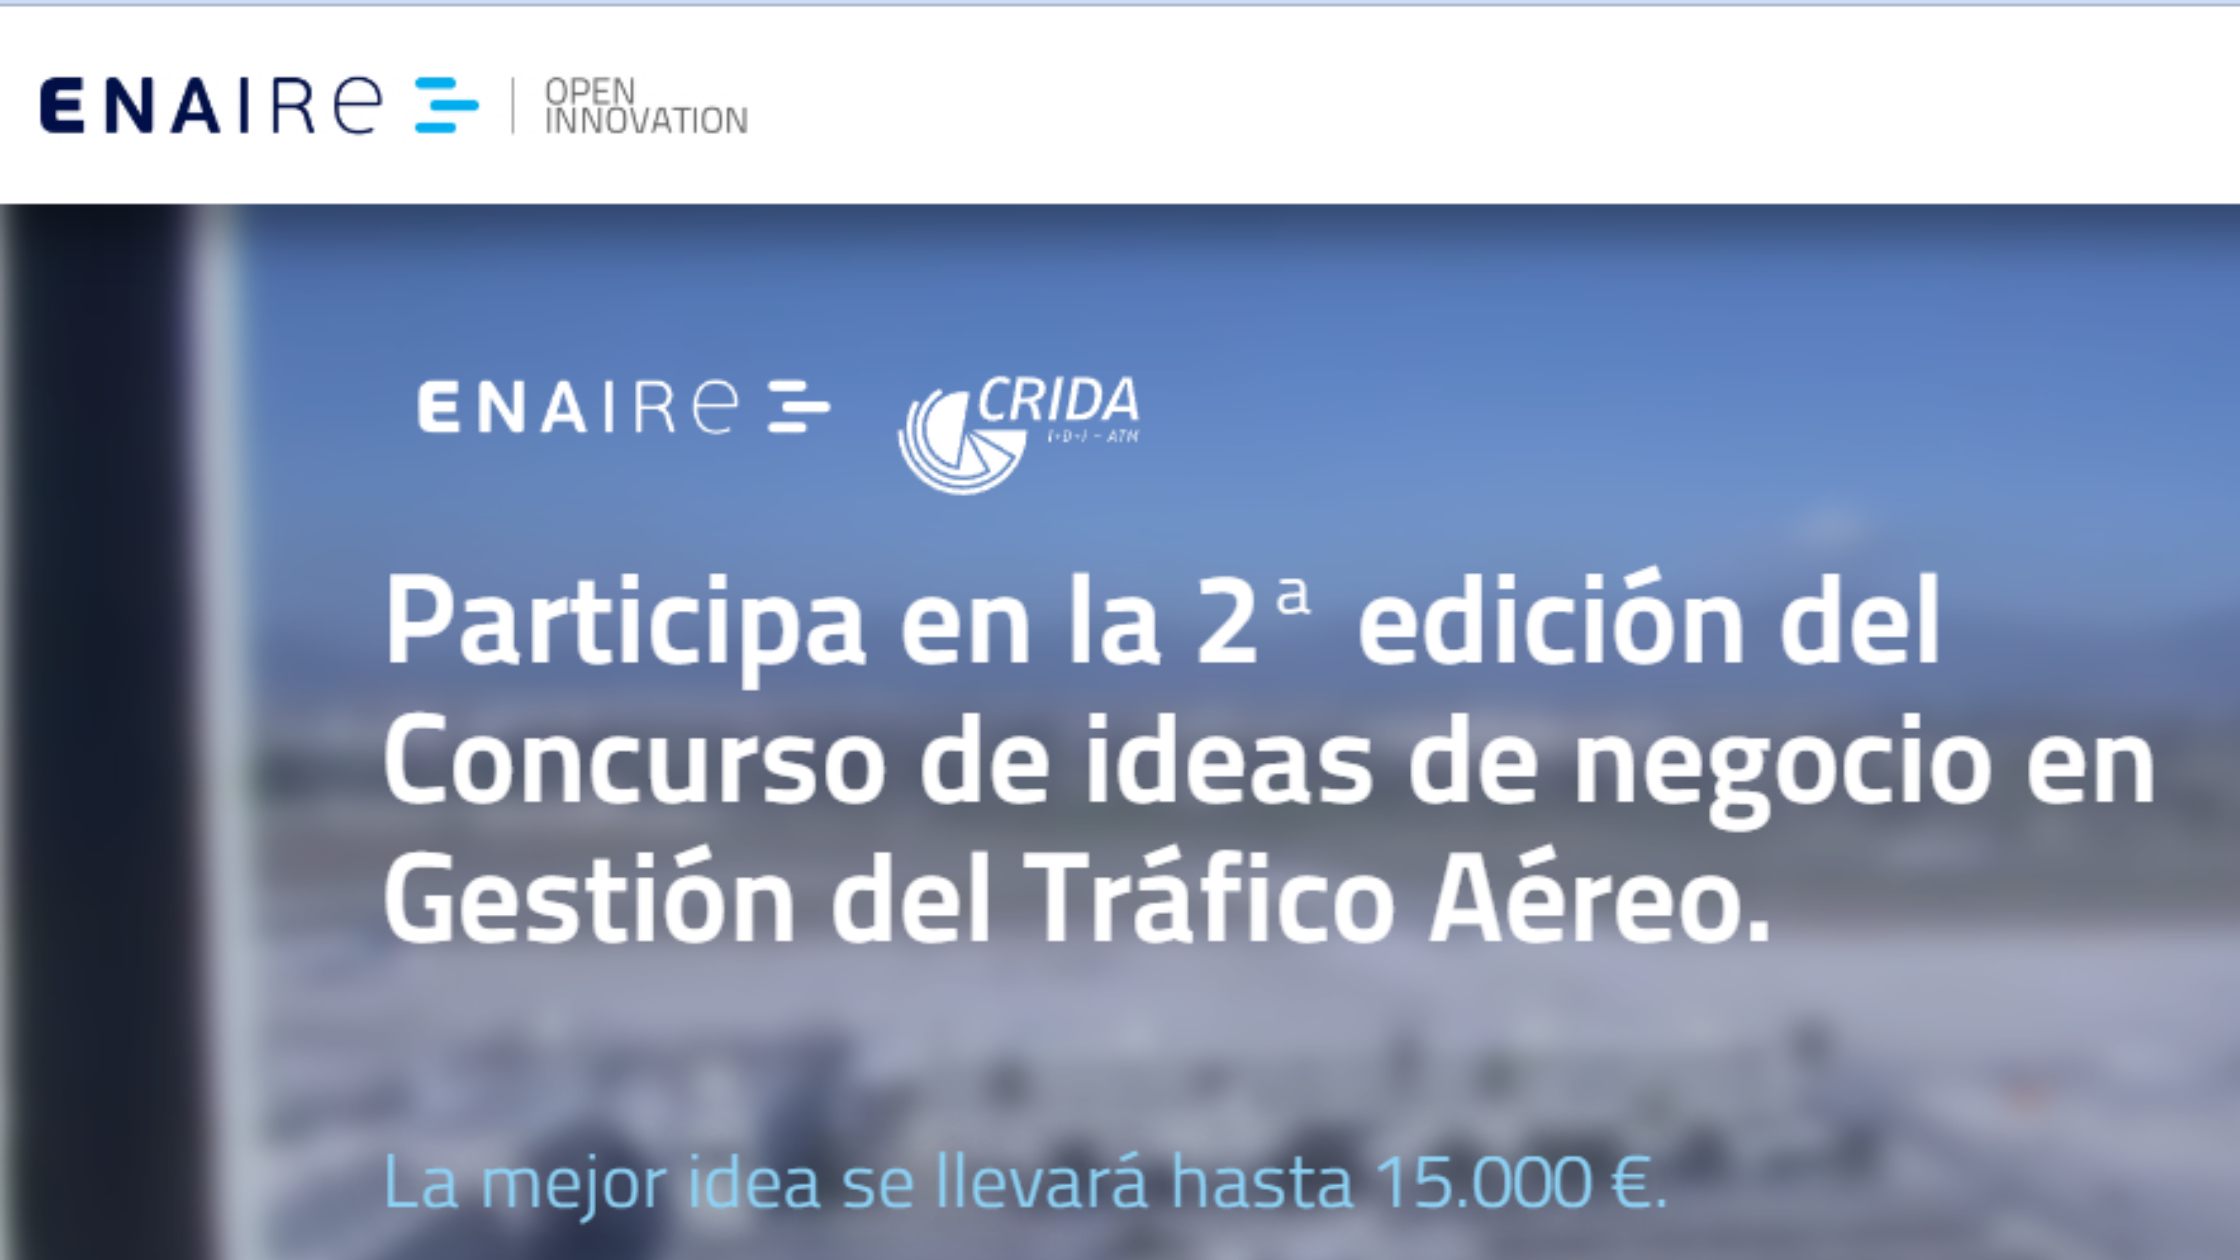 ENAIRE lanza la 2ª edición del Concurso de ideas de negocio en Gestión del Tráfico Aéreo